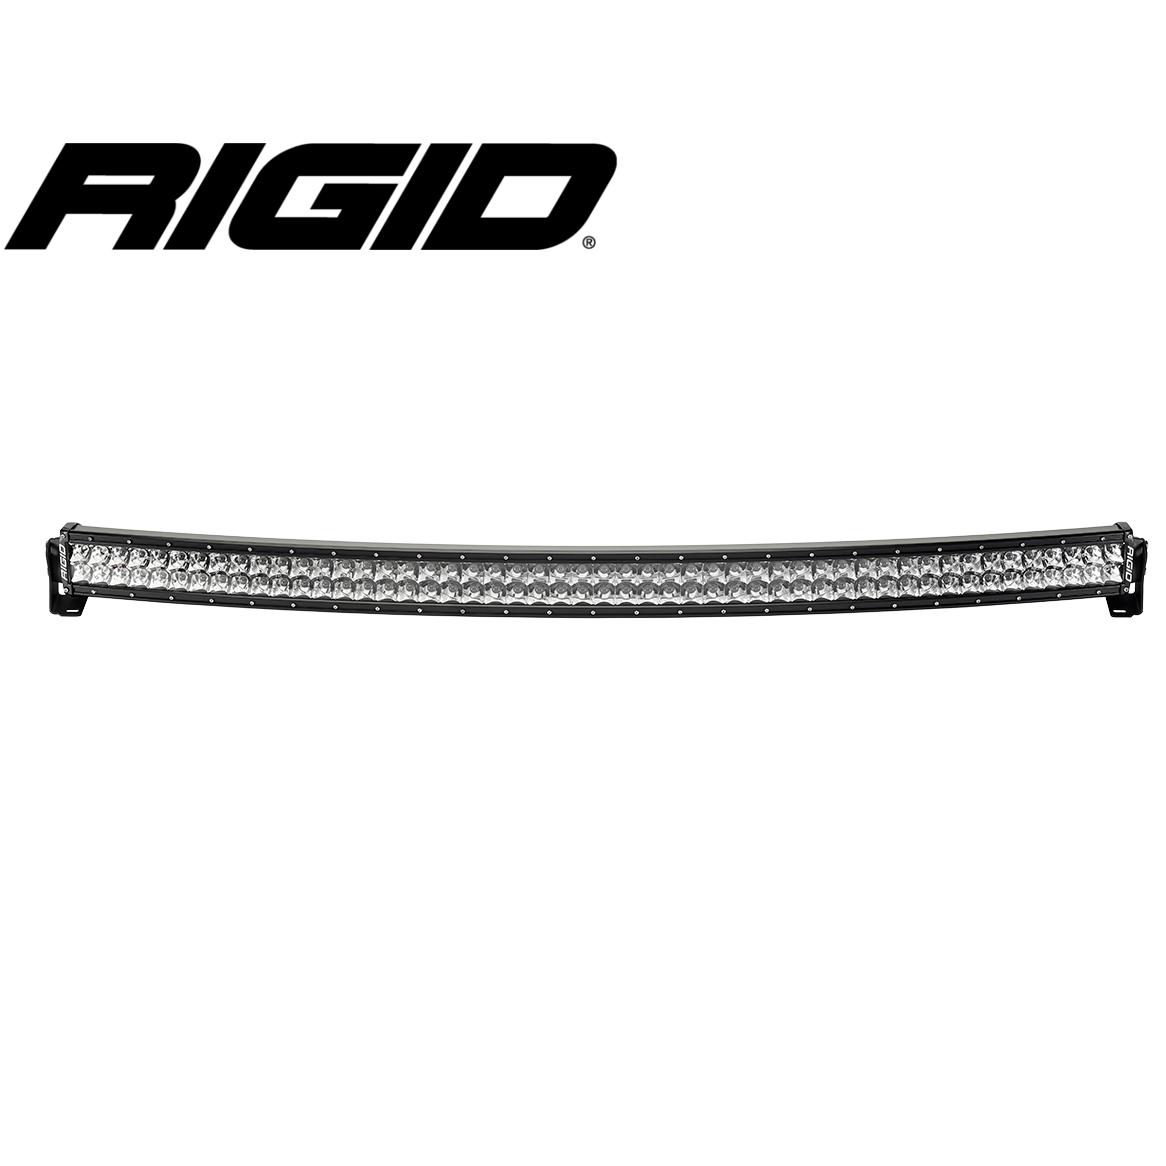 Rigid RDS-Series Pro 50tum-0